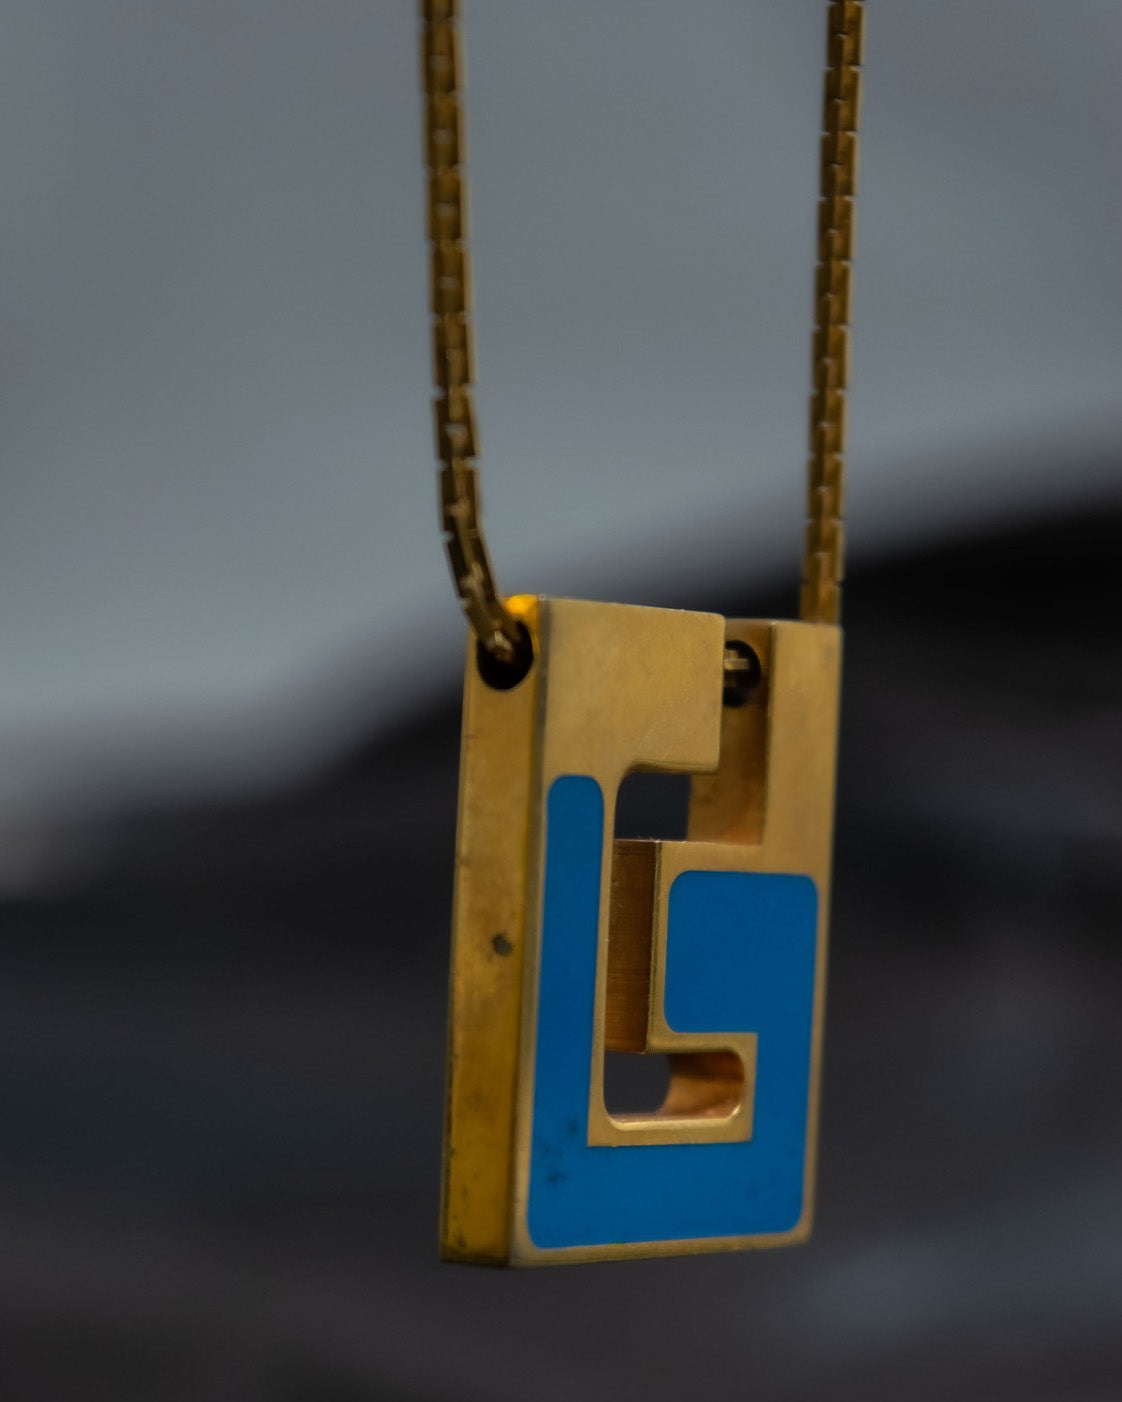 Blue Symbolic Necklace